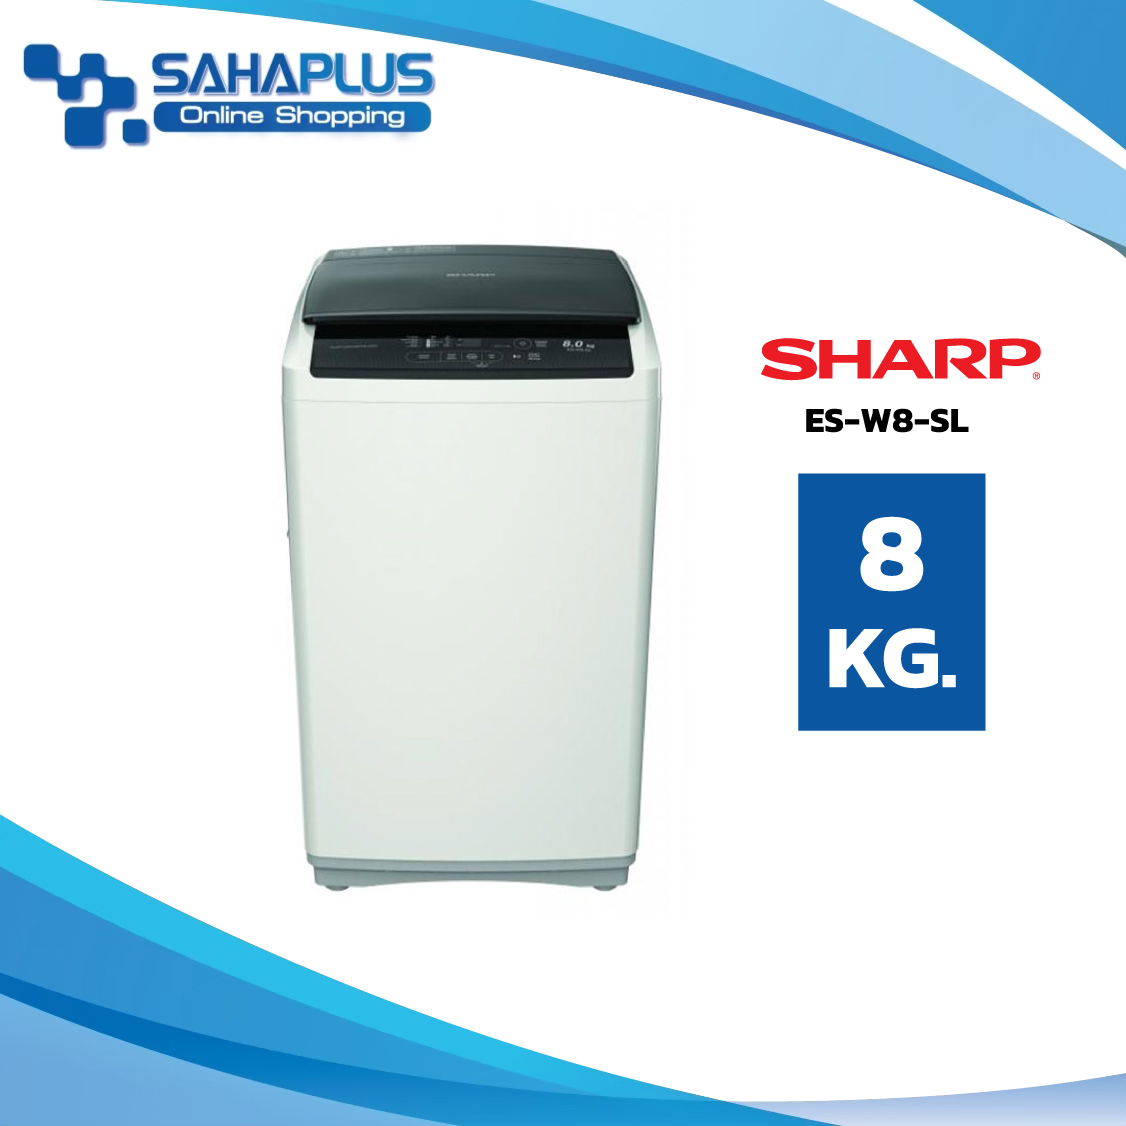 (เหลือสีขาว) เครื่องซักผ้าฝาบน Sharp รุ่น ES-W8-SL ขนาด 8 Kg. ( รับประกันสินค้านาน 10 ปี )